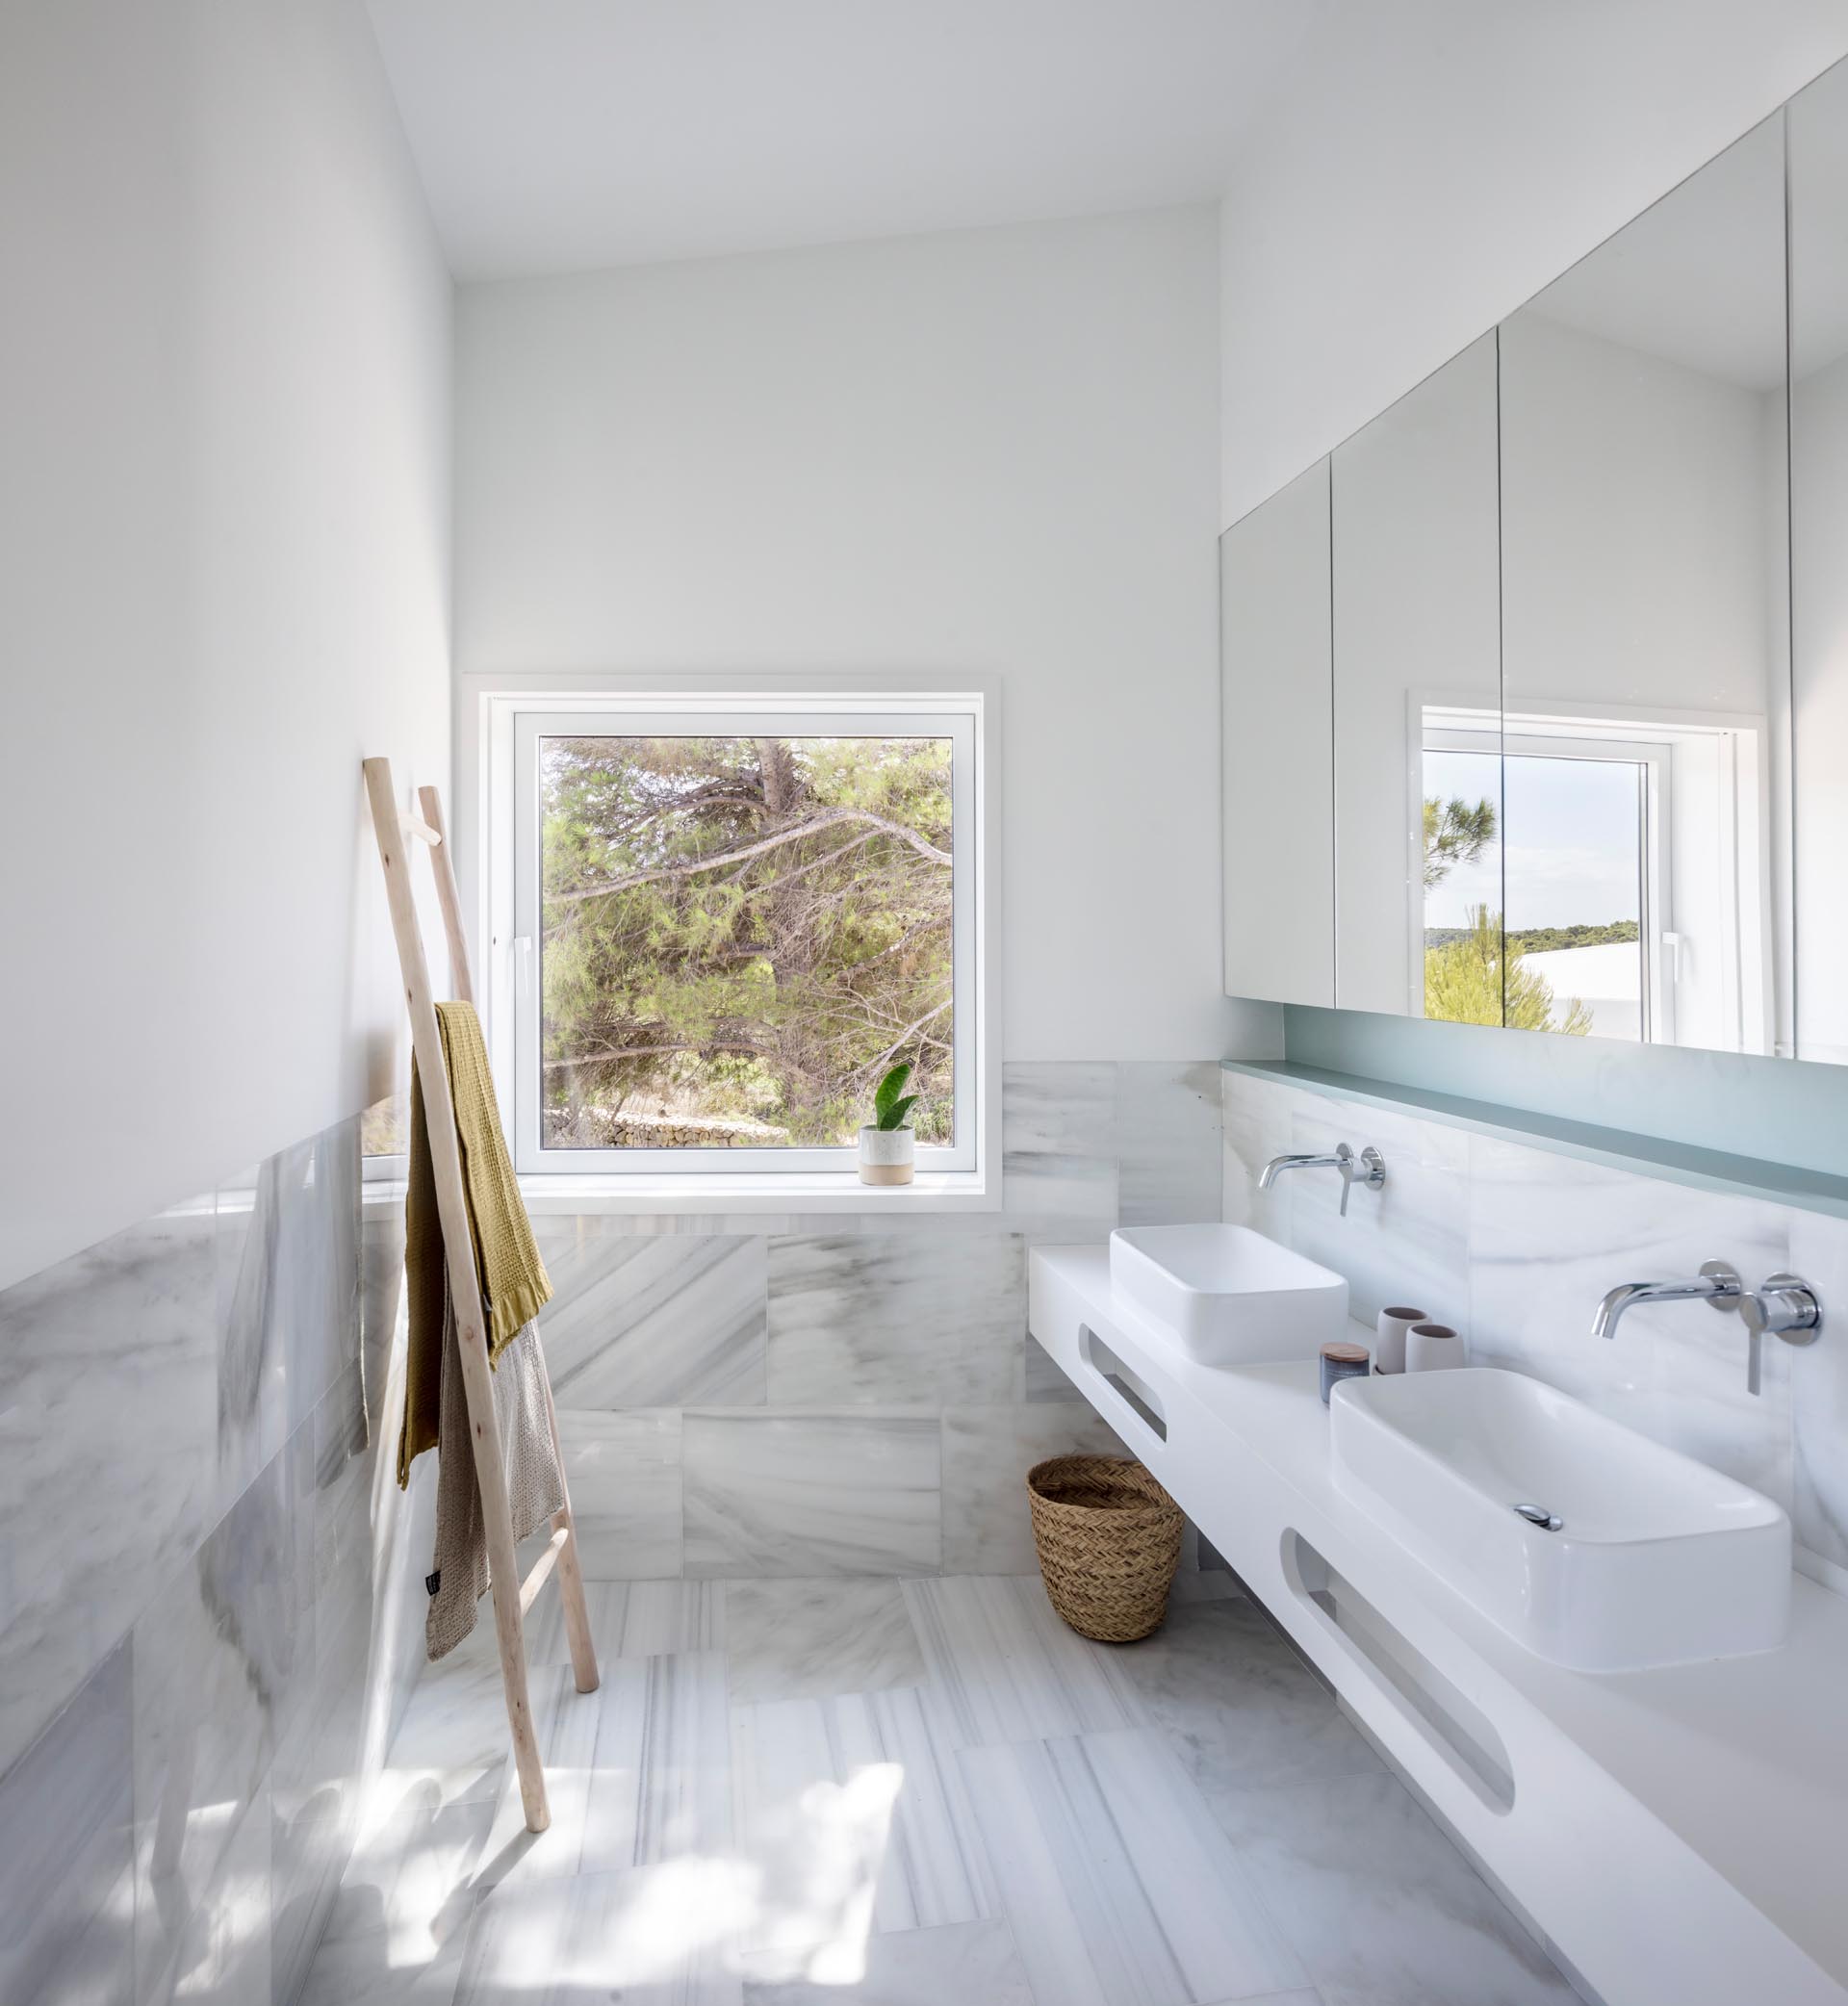 Современная ванная комната с мраморной плиткой большого формата, белым туалетным столиком и нишей стеллажа пастельно-бирюзового цвета.